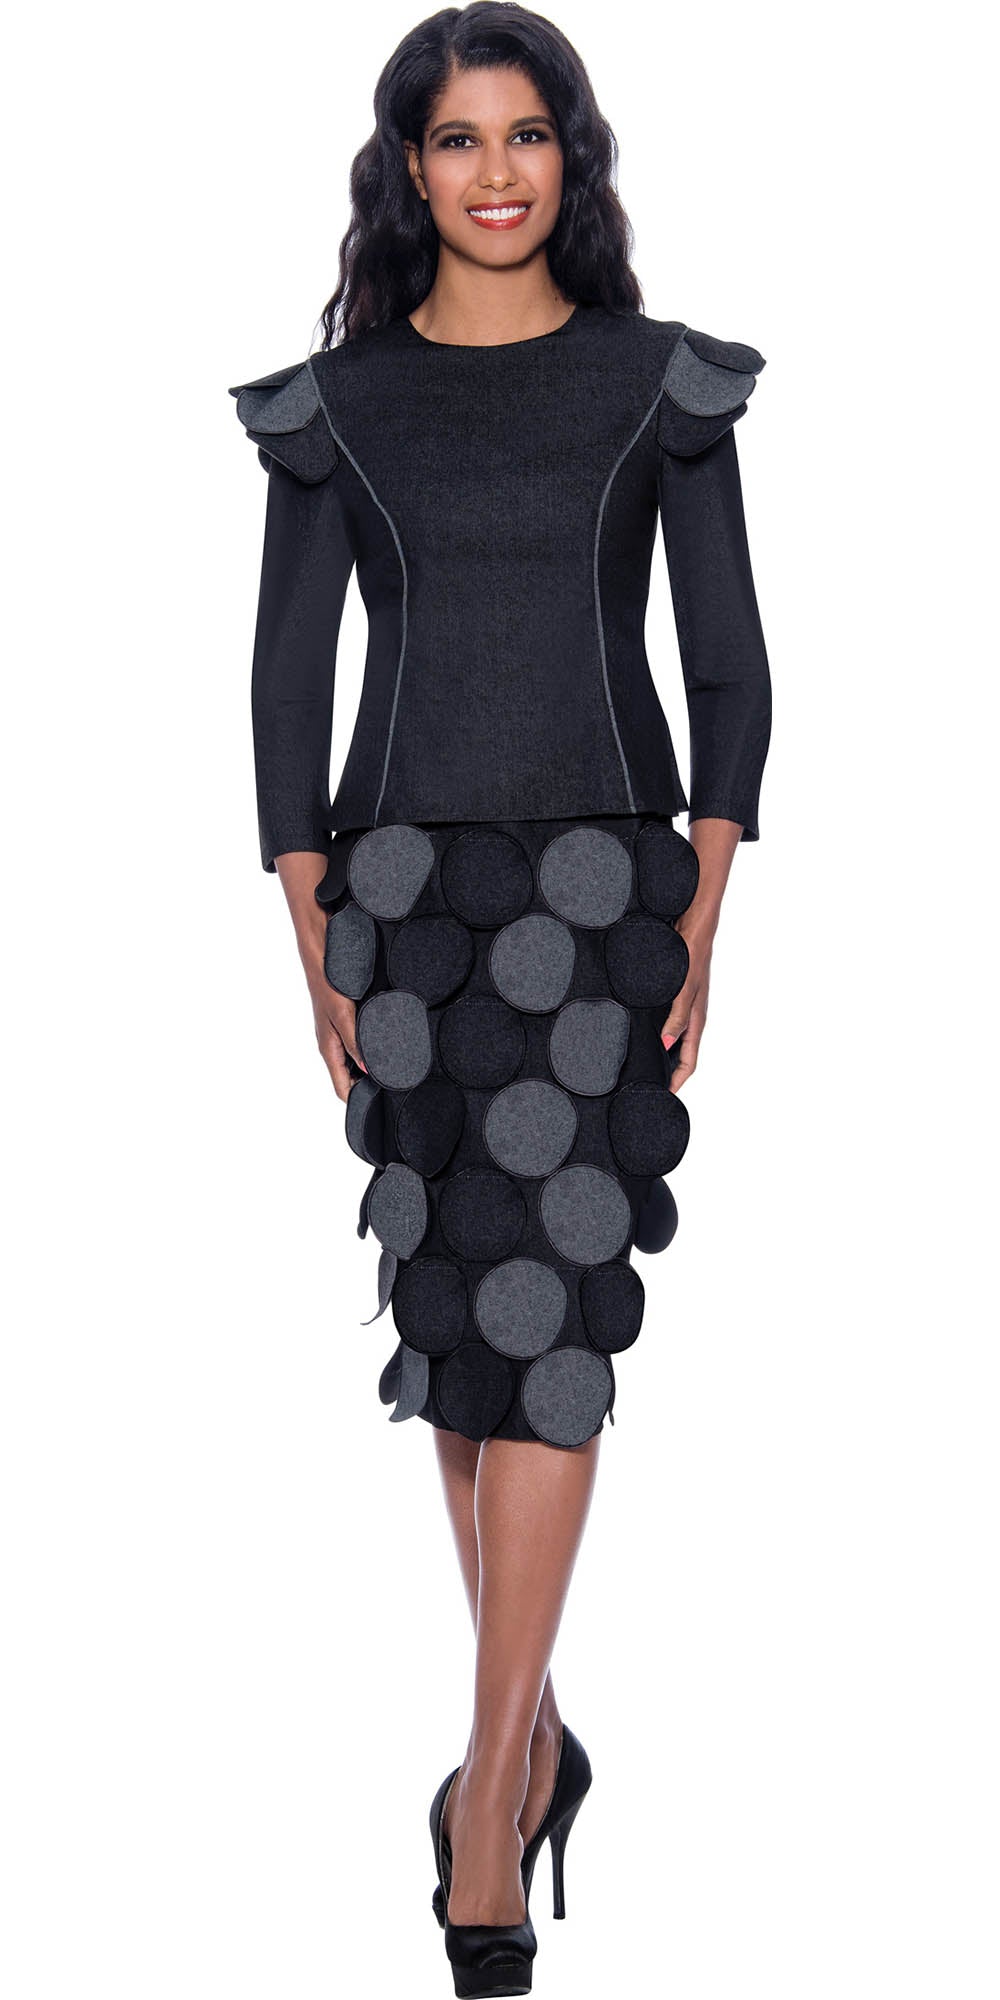 Devine Sport DS62792-Black - Soft Denim Skirt Suit Featuring Circular Petal Details